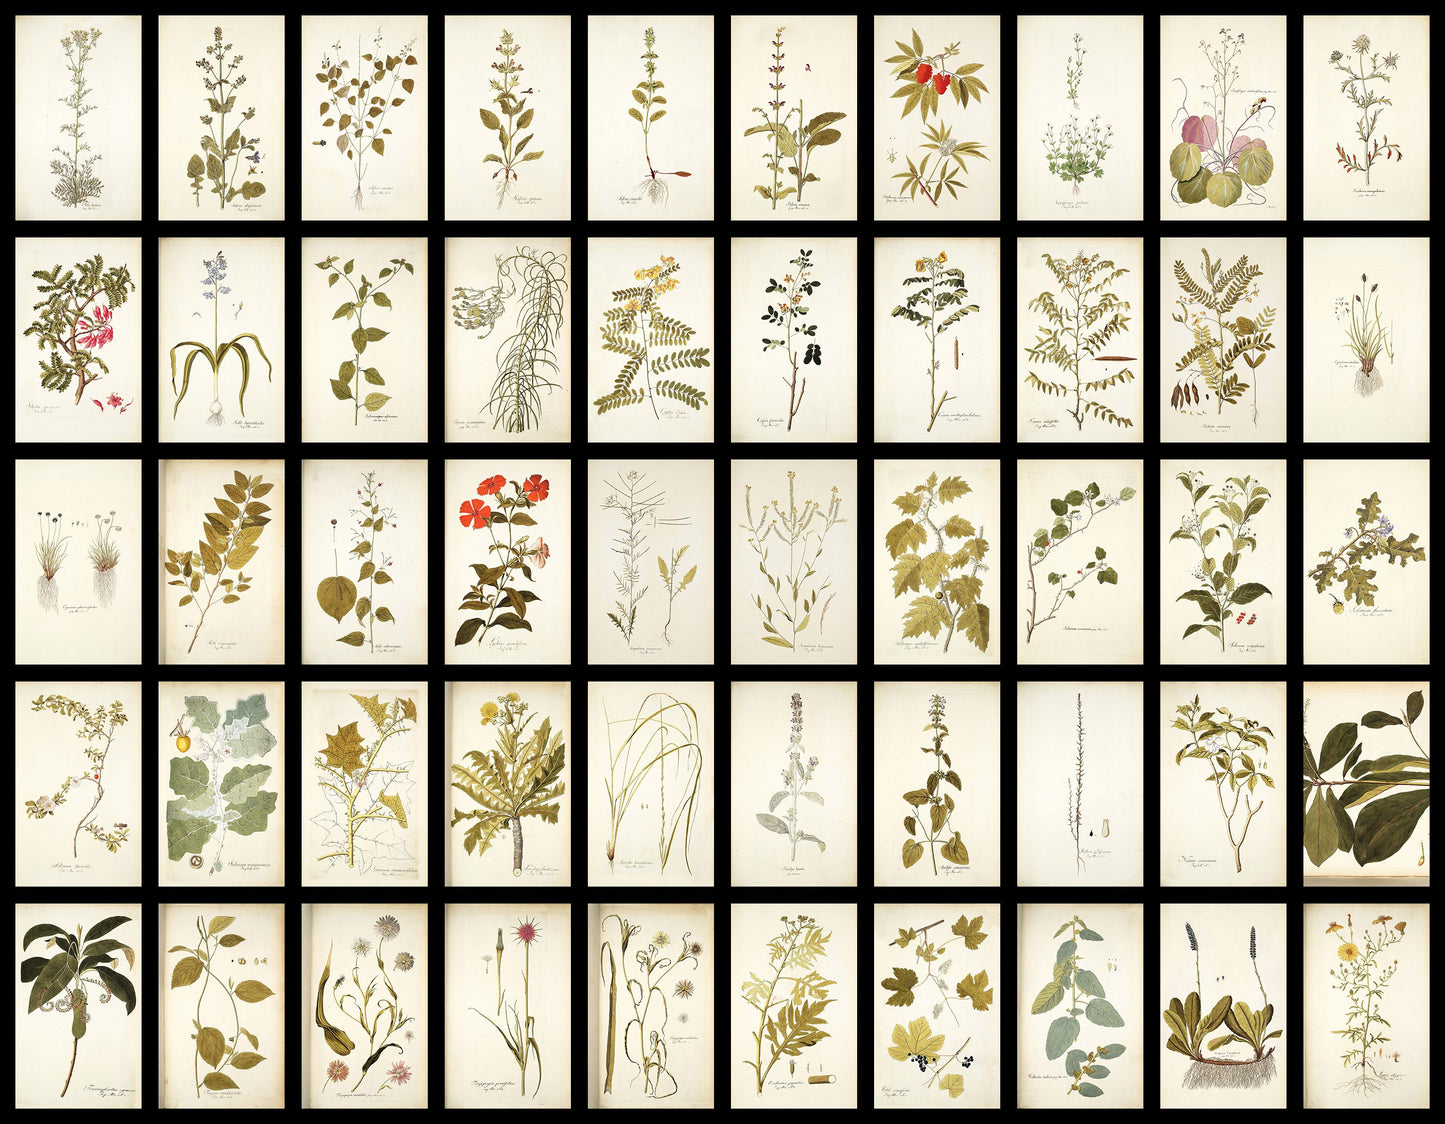 50 Illustrations of Rare Plants (Icones plantarum rariorum Vol.1 , 1781, pack 4)